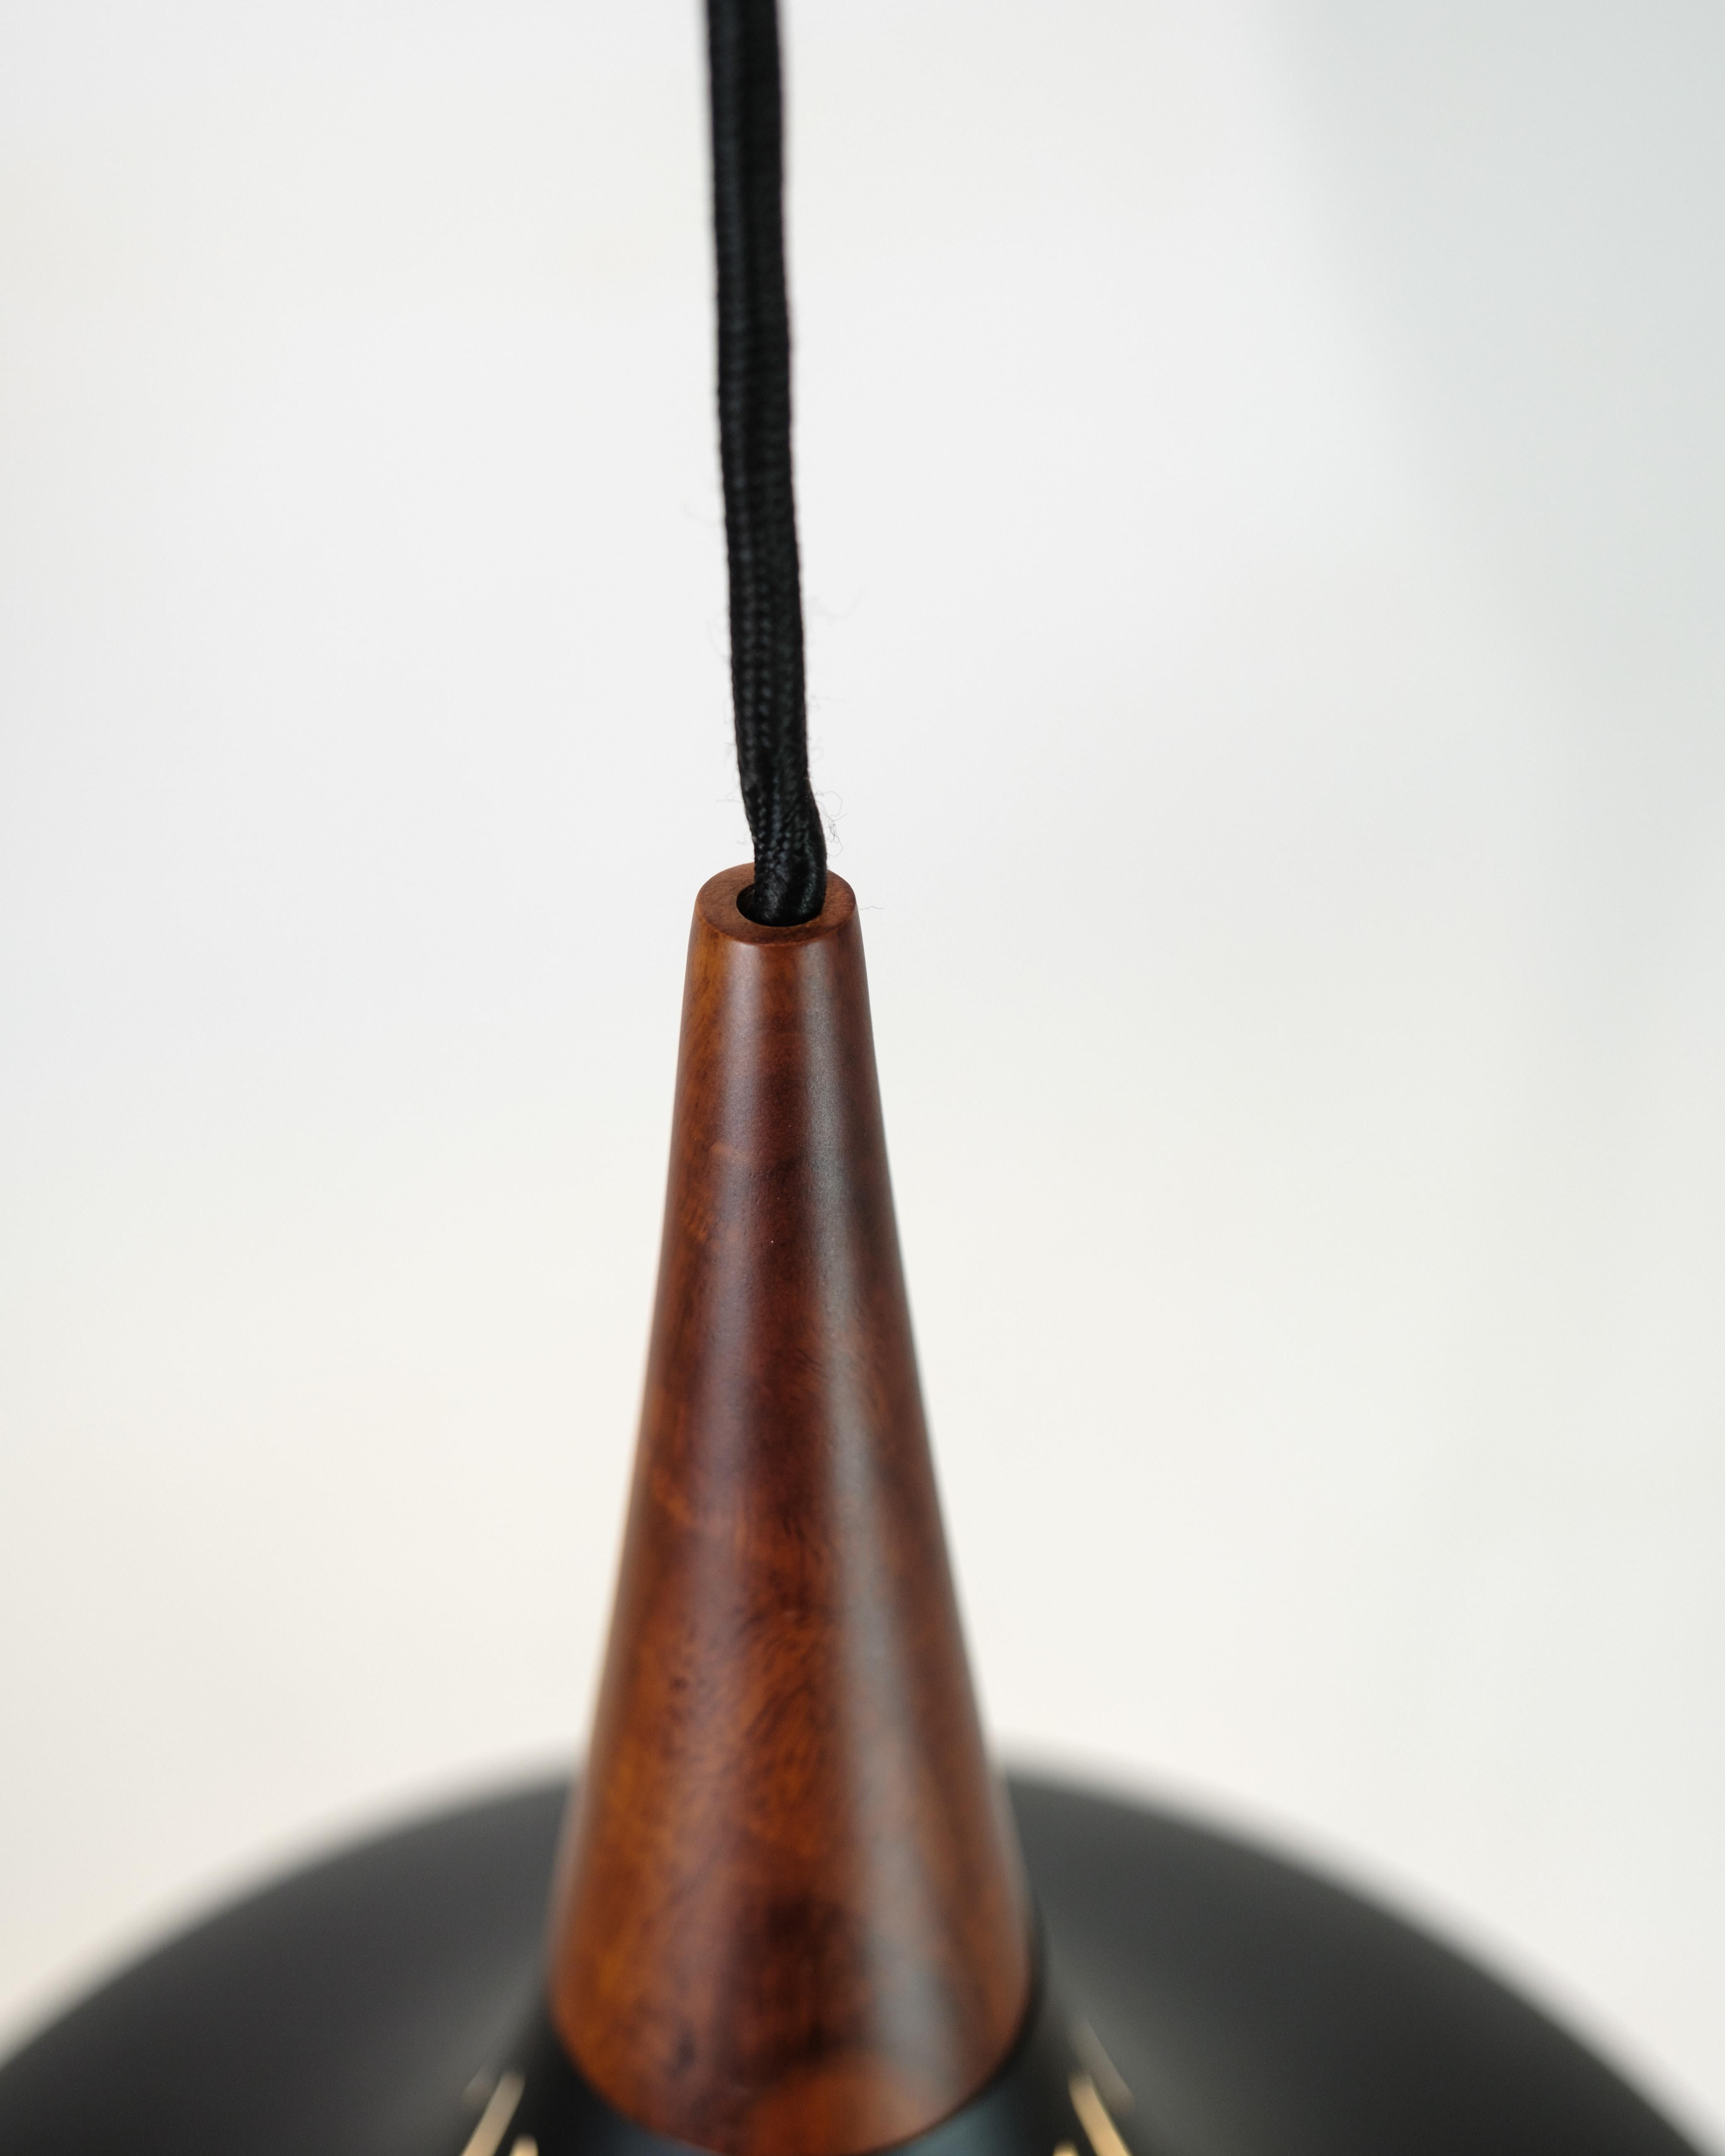 La suspension Orient est une lampe classique et emblématique conçue par Jo Hammerborg pour Fritz Hansen. Cette lampe est un excellent exemple du design danois du milieu du XXe siècle.

Jo Hammerborg était un célèbre designer danois connu pour ses